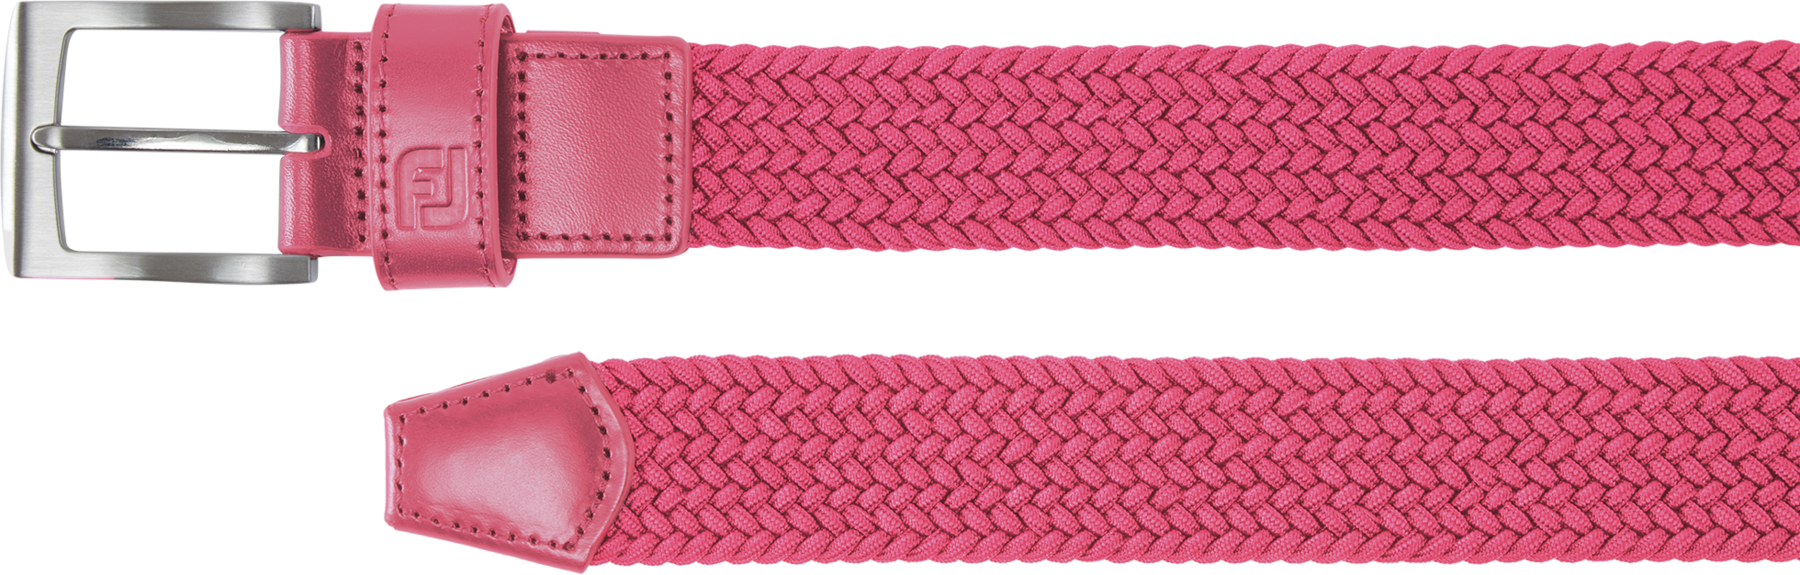 Ζώνες Footjoy Braided Womens Belt Hot Pink Regular